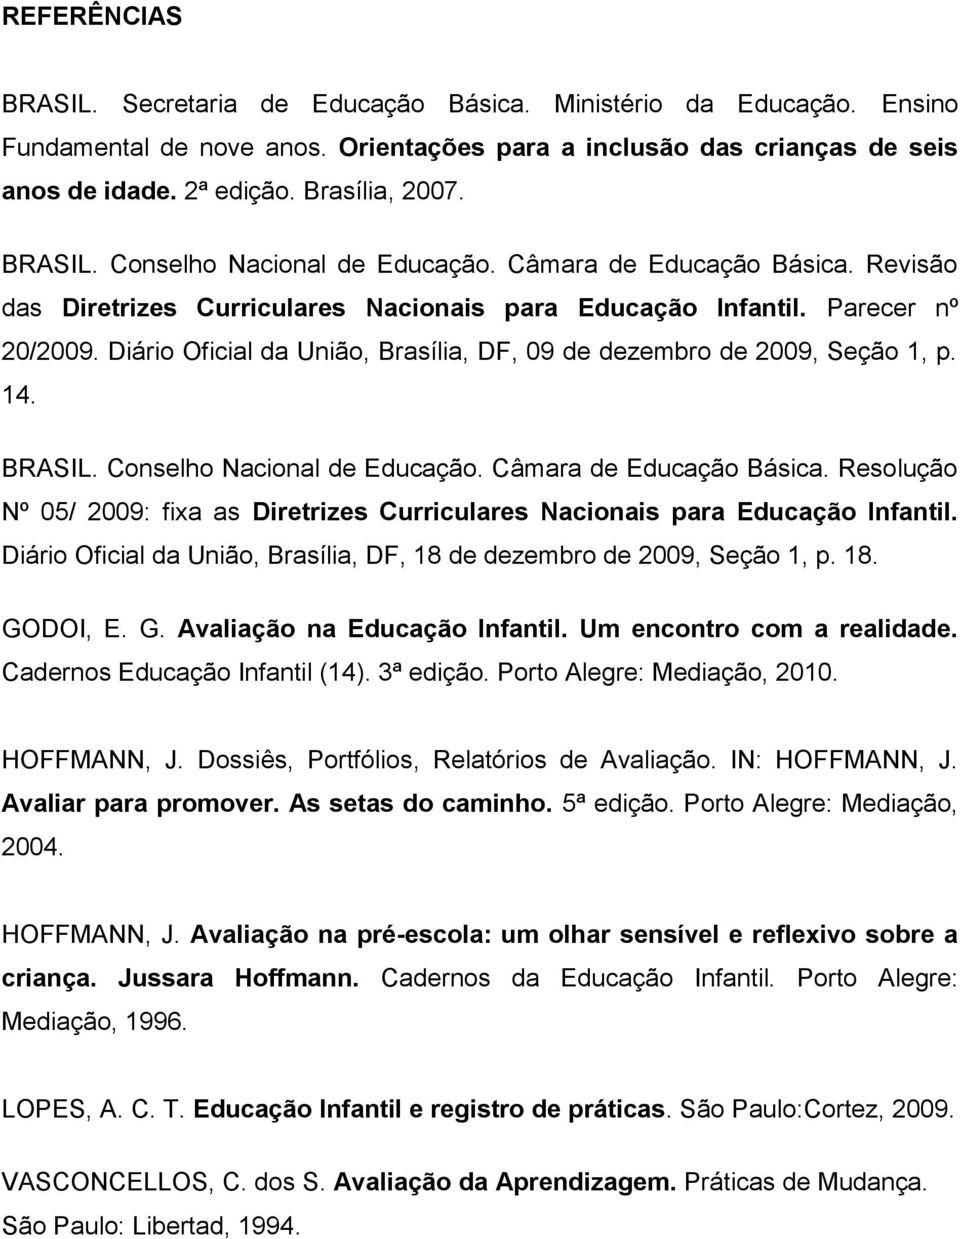 Diário Oficial da União, Brasília, DF, 09 de dezembro de 2009, Seção 1, p. 14. BRASIL. Conselho Nacional de Educação. Câmara de Educação Básica.